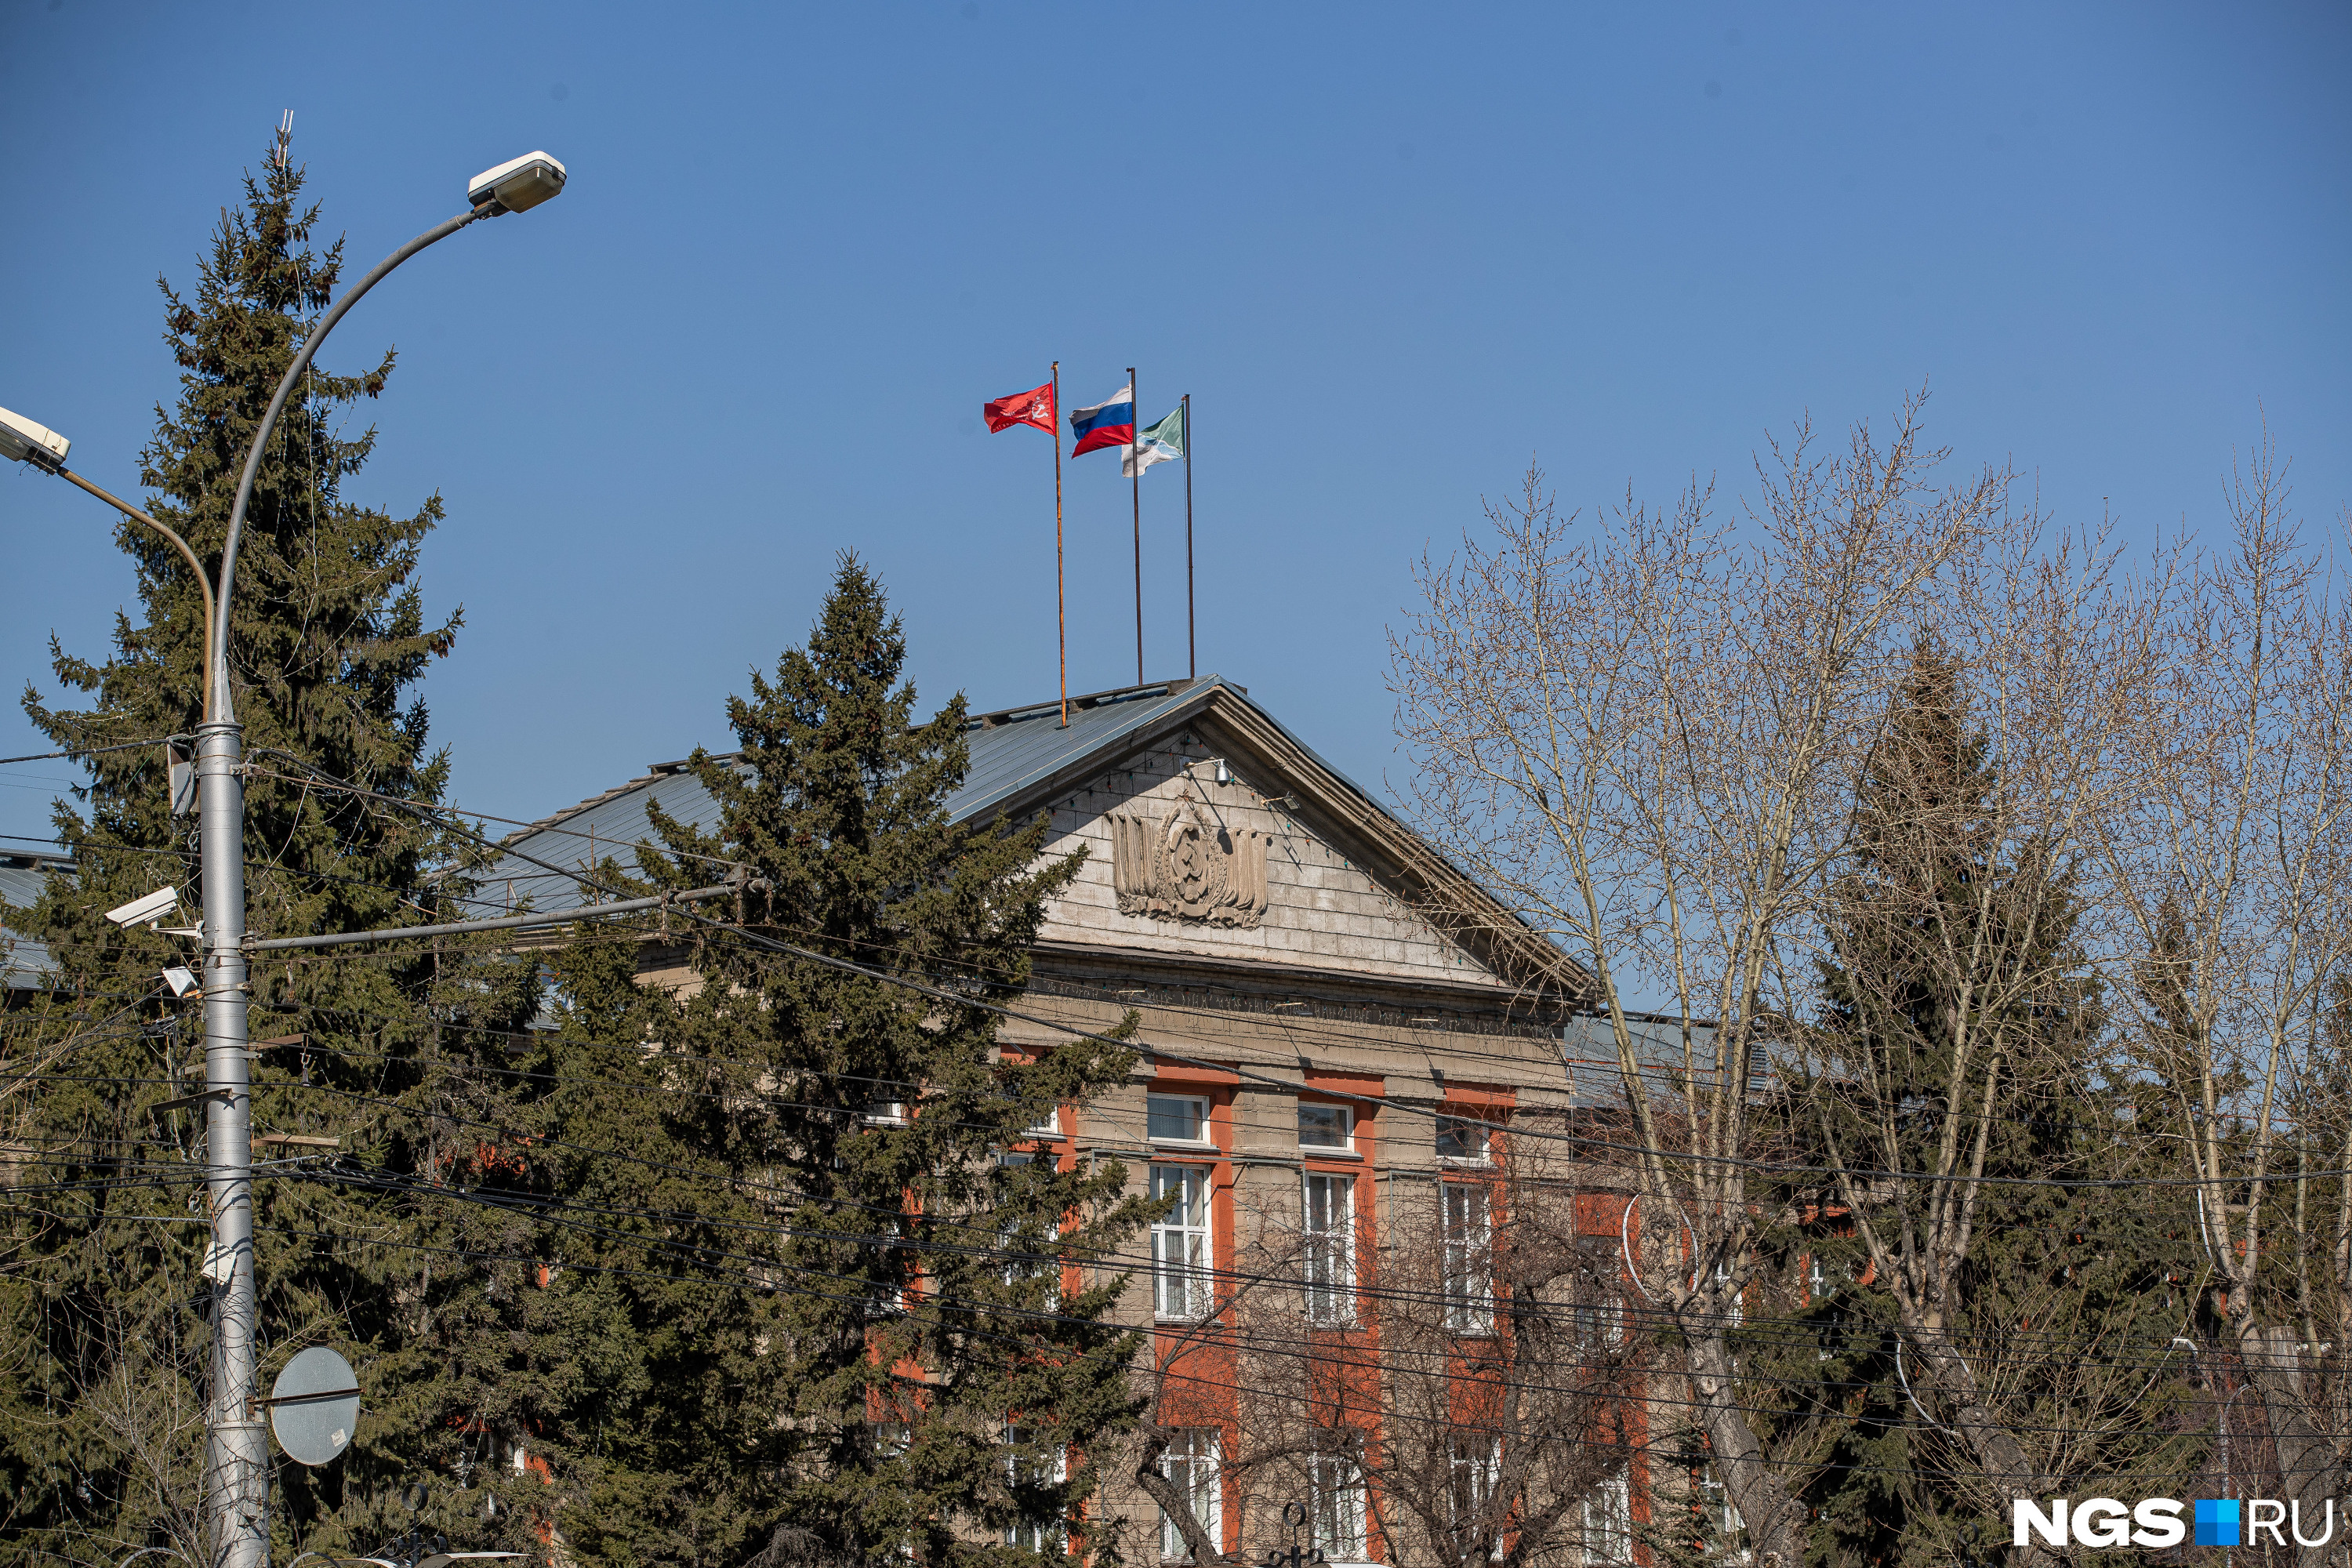 Знамя Победы подняли над администрацией Ленинского района в Новосибирске апрель 2022 года - 14 апреля 2022 - НГС